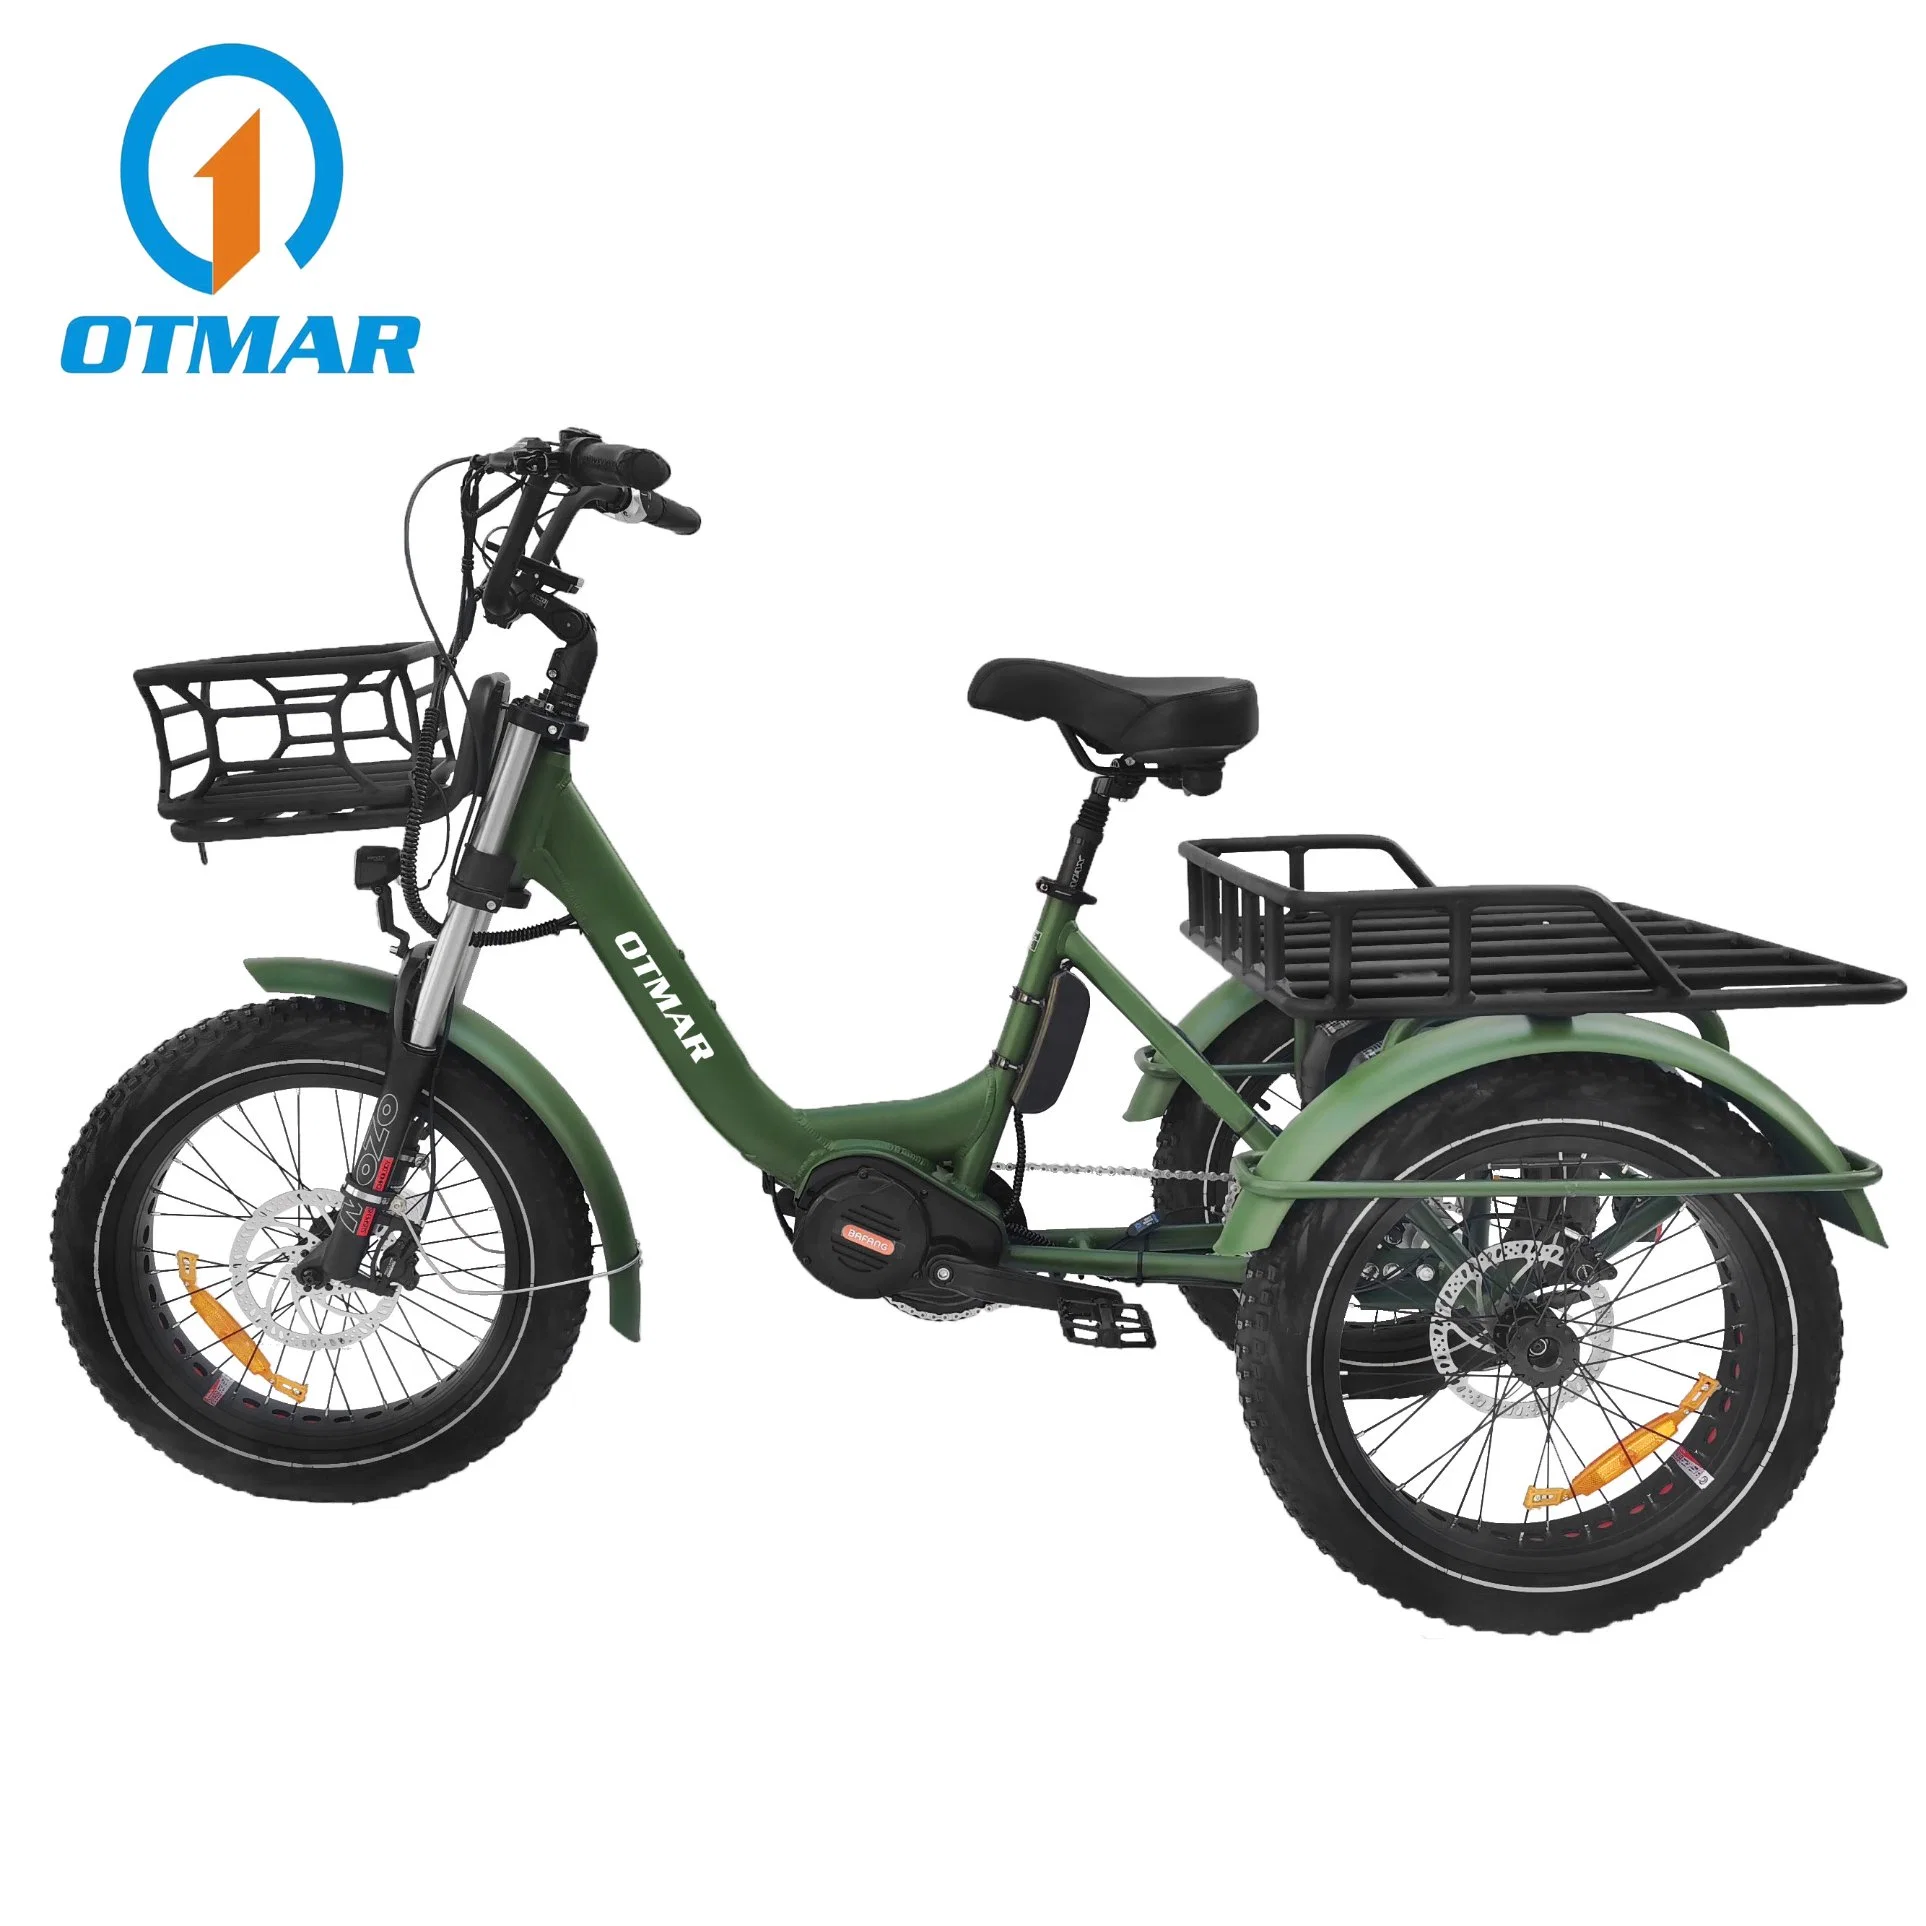 دراجة ثلاثية العجلات كهربائية مخصصة للثلج مع إطار كبير وسلة وبطارية ليثيوم مزدوجة عالية القوة ومحرك Bafang BBS للبالغين.